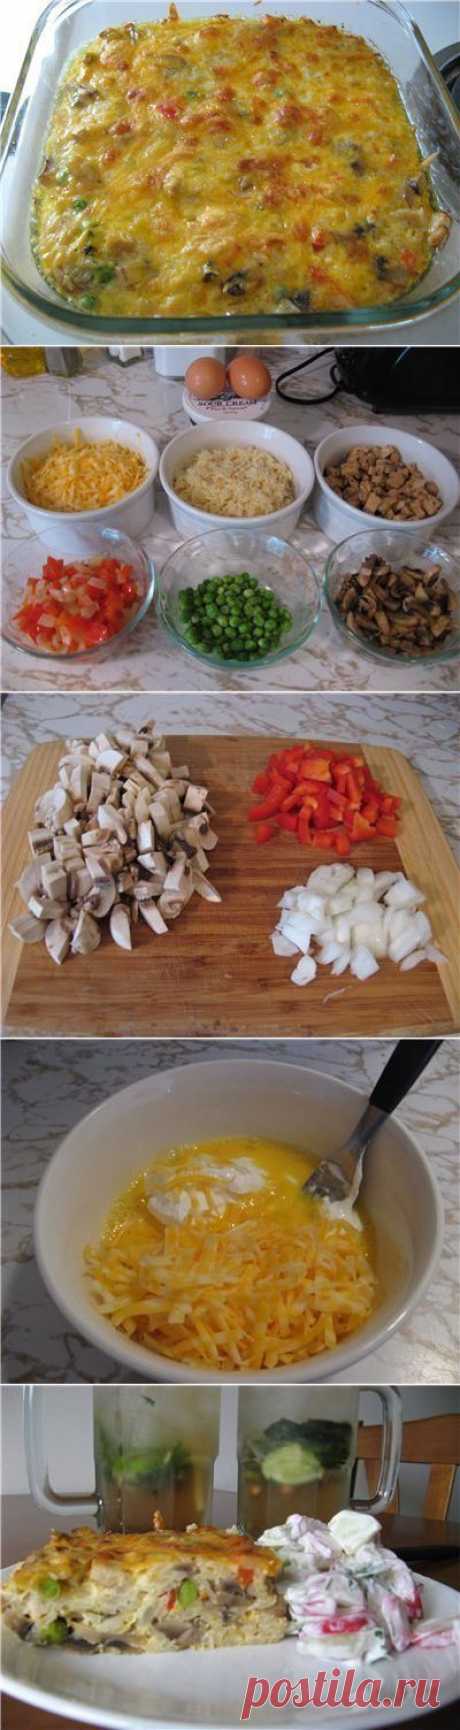 Рисовая запеканка с куриной грудкой, грибами и овощам